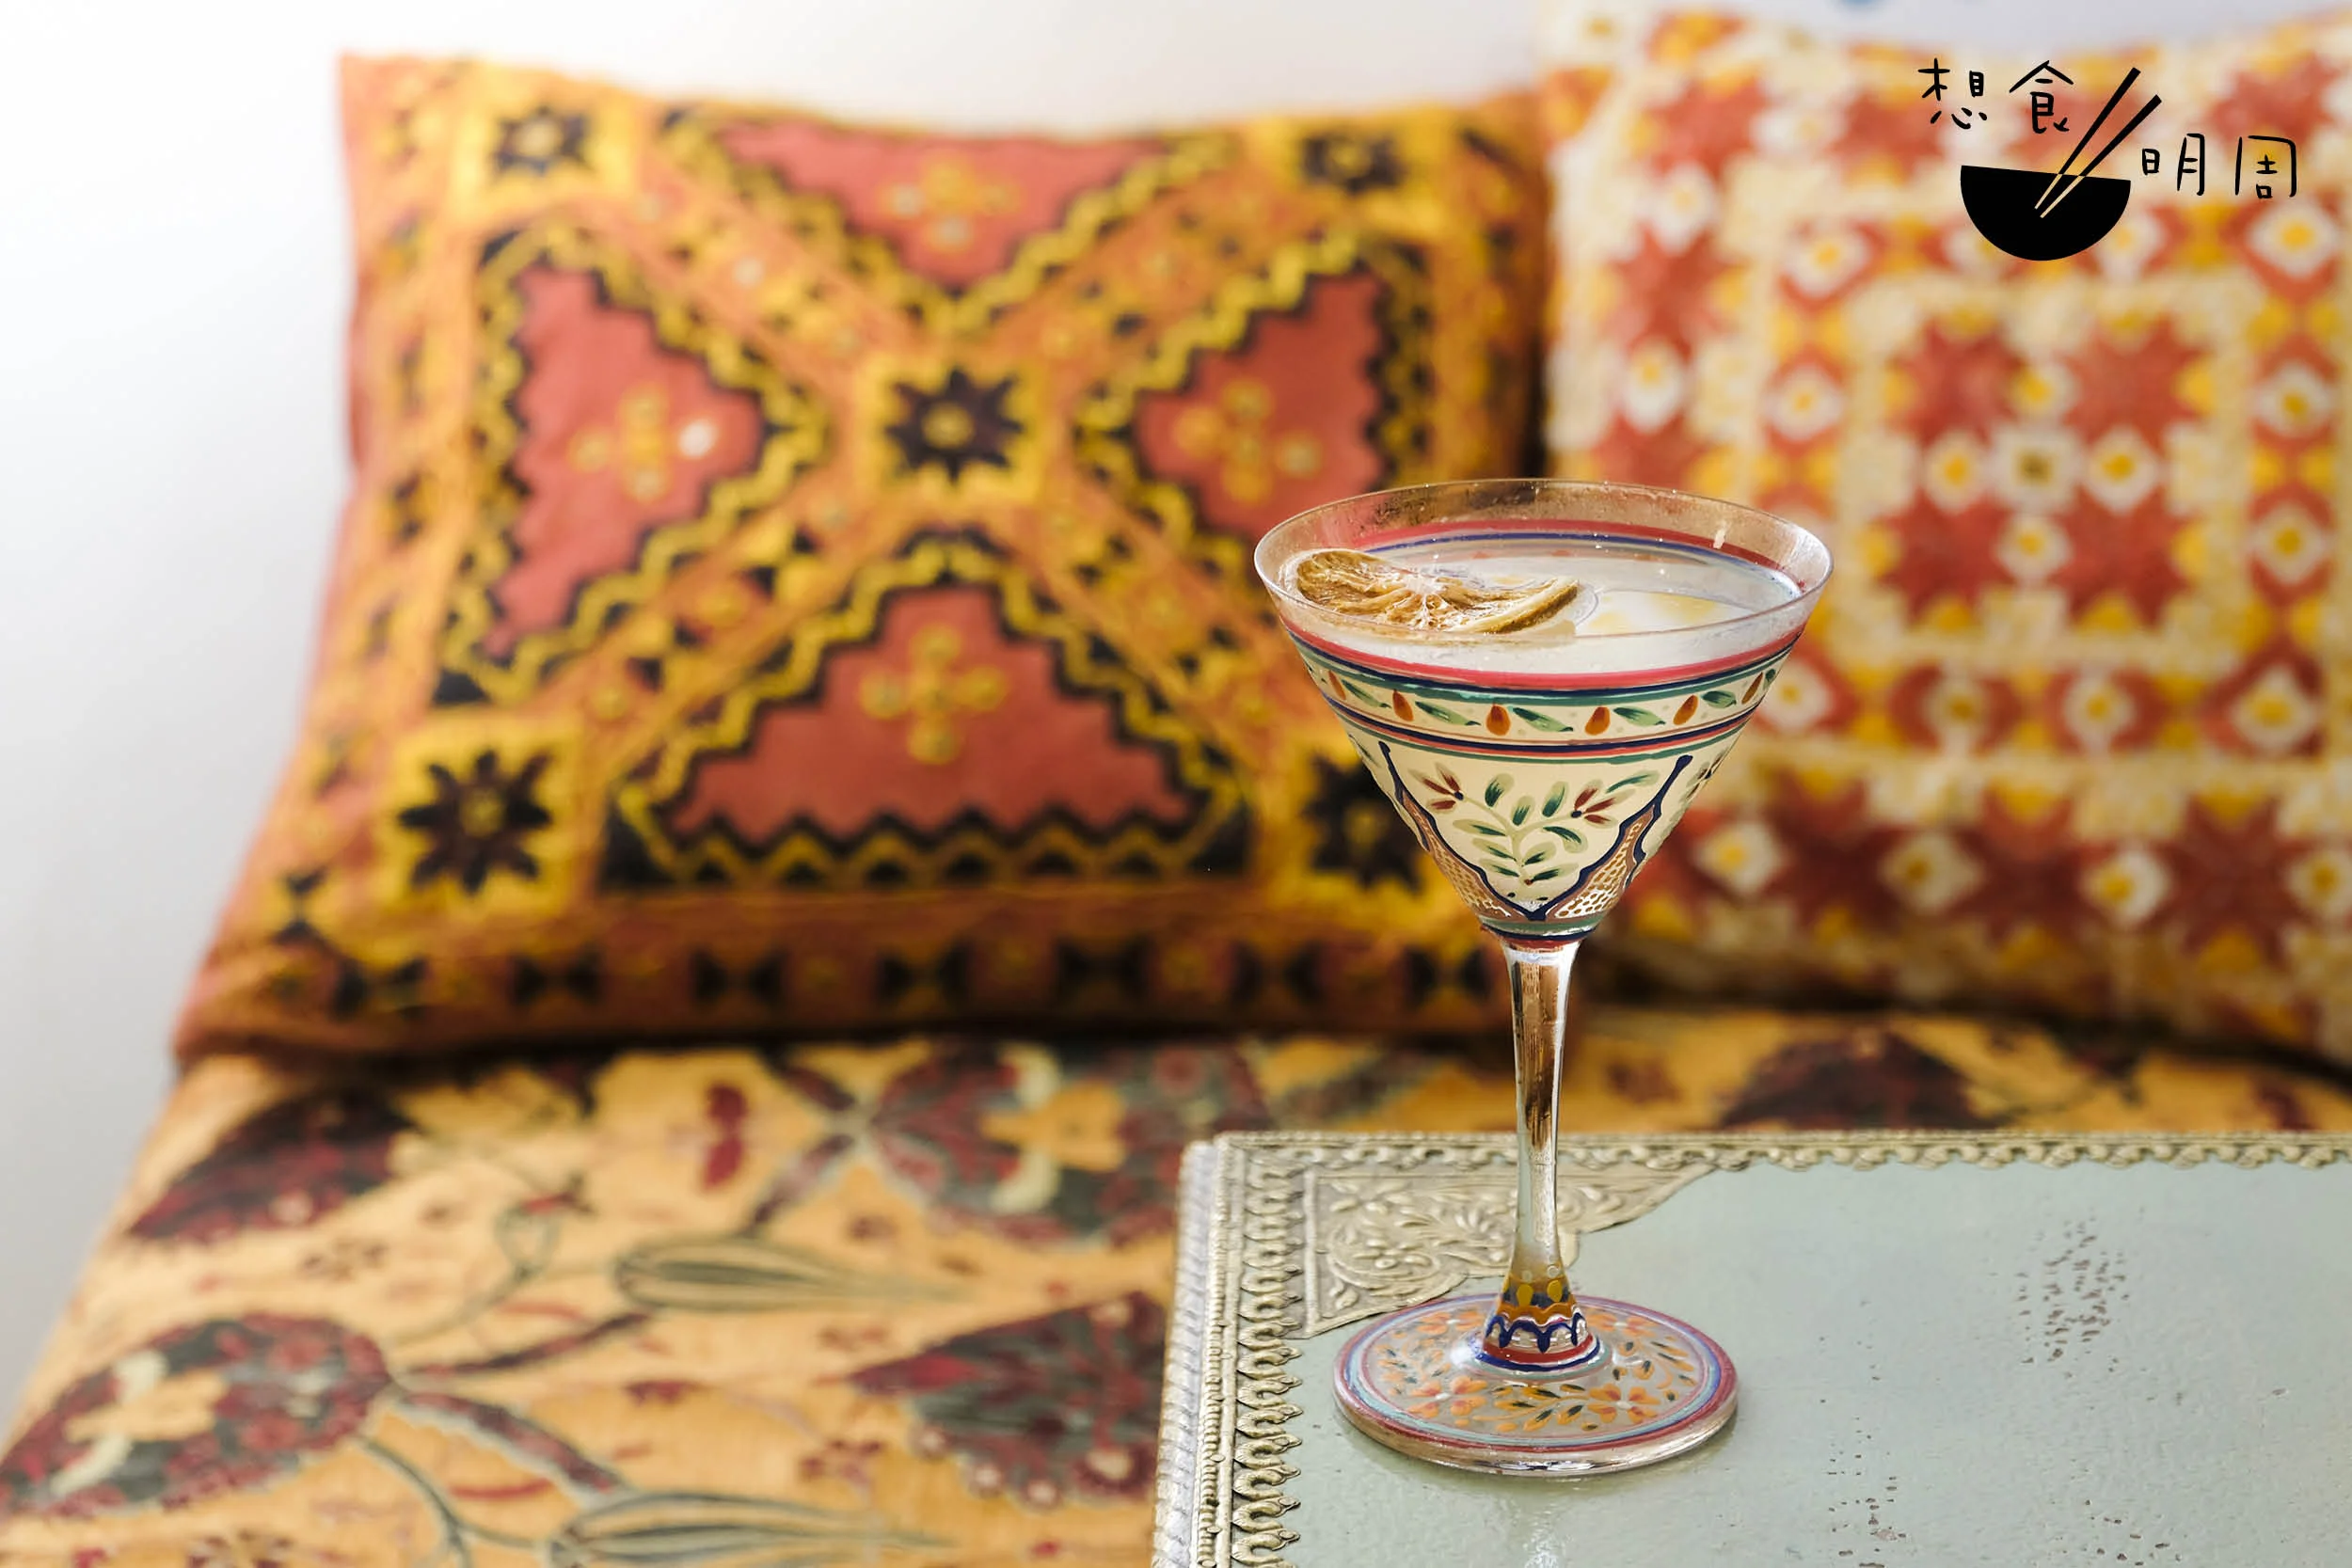 Silk Road // 以OPIHR氈酒調整成的Gin & Tonic，以印度手繪玻璃酒杯盛載，風情十足。（$98）